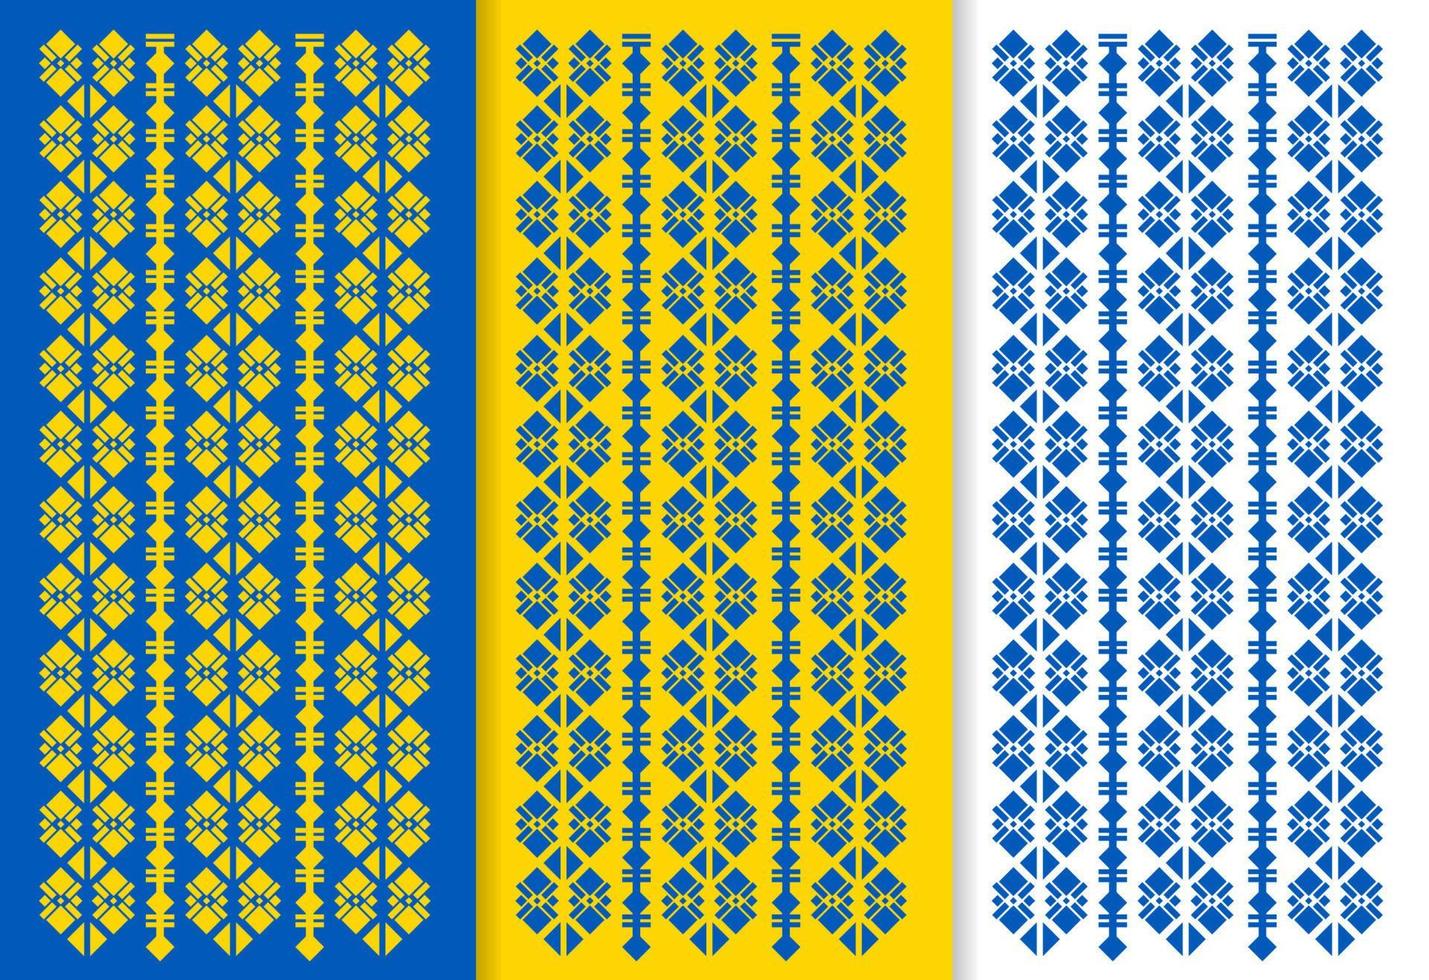 Ukraine culture fabric pattern set vector